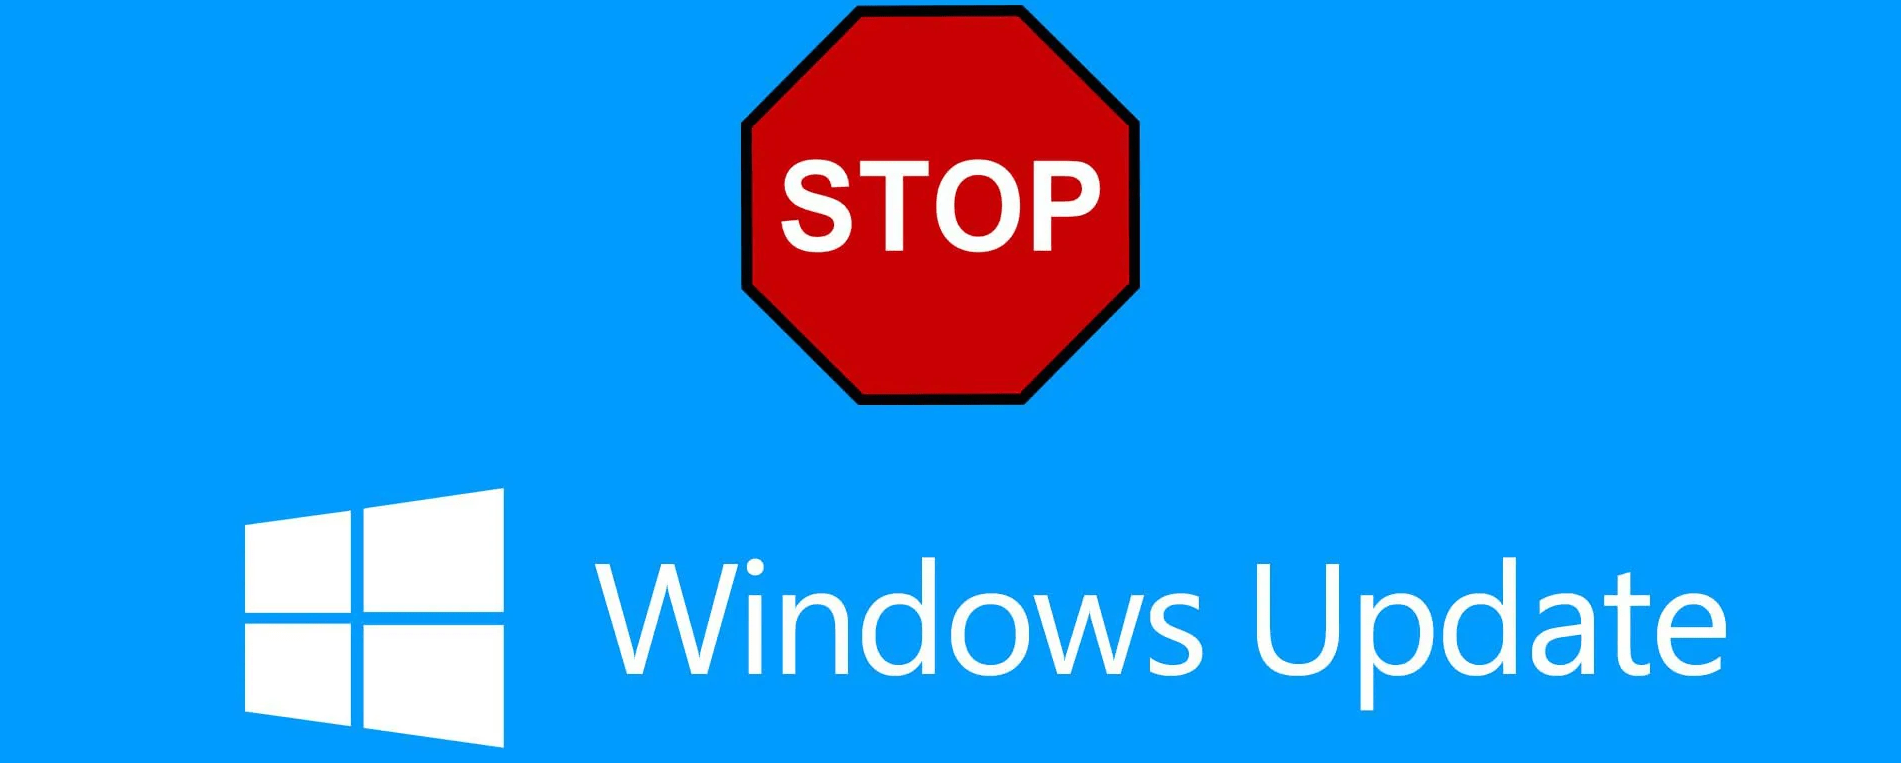 Windows 10 reinicie automáticamente